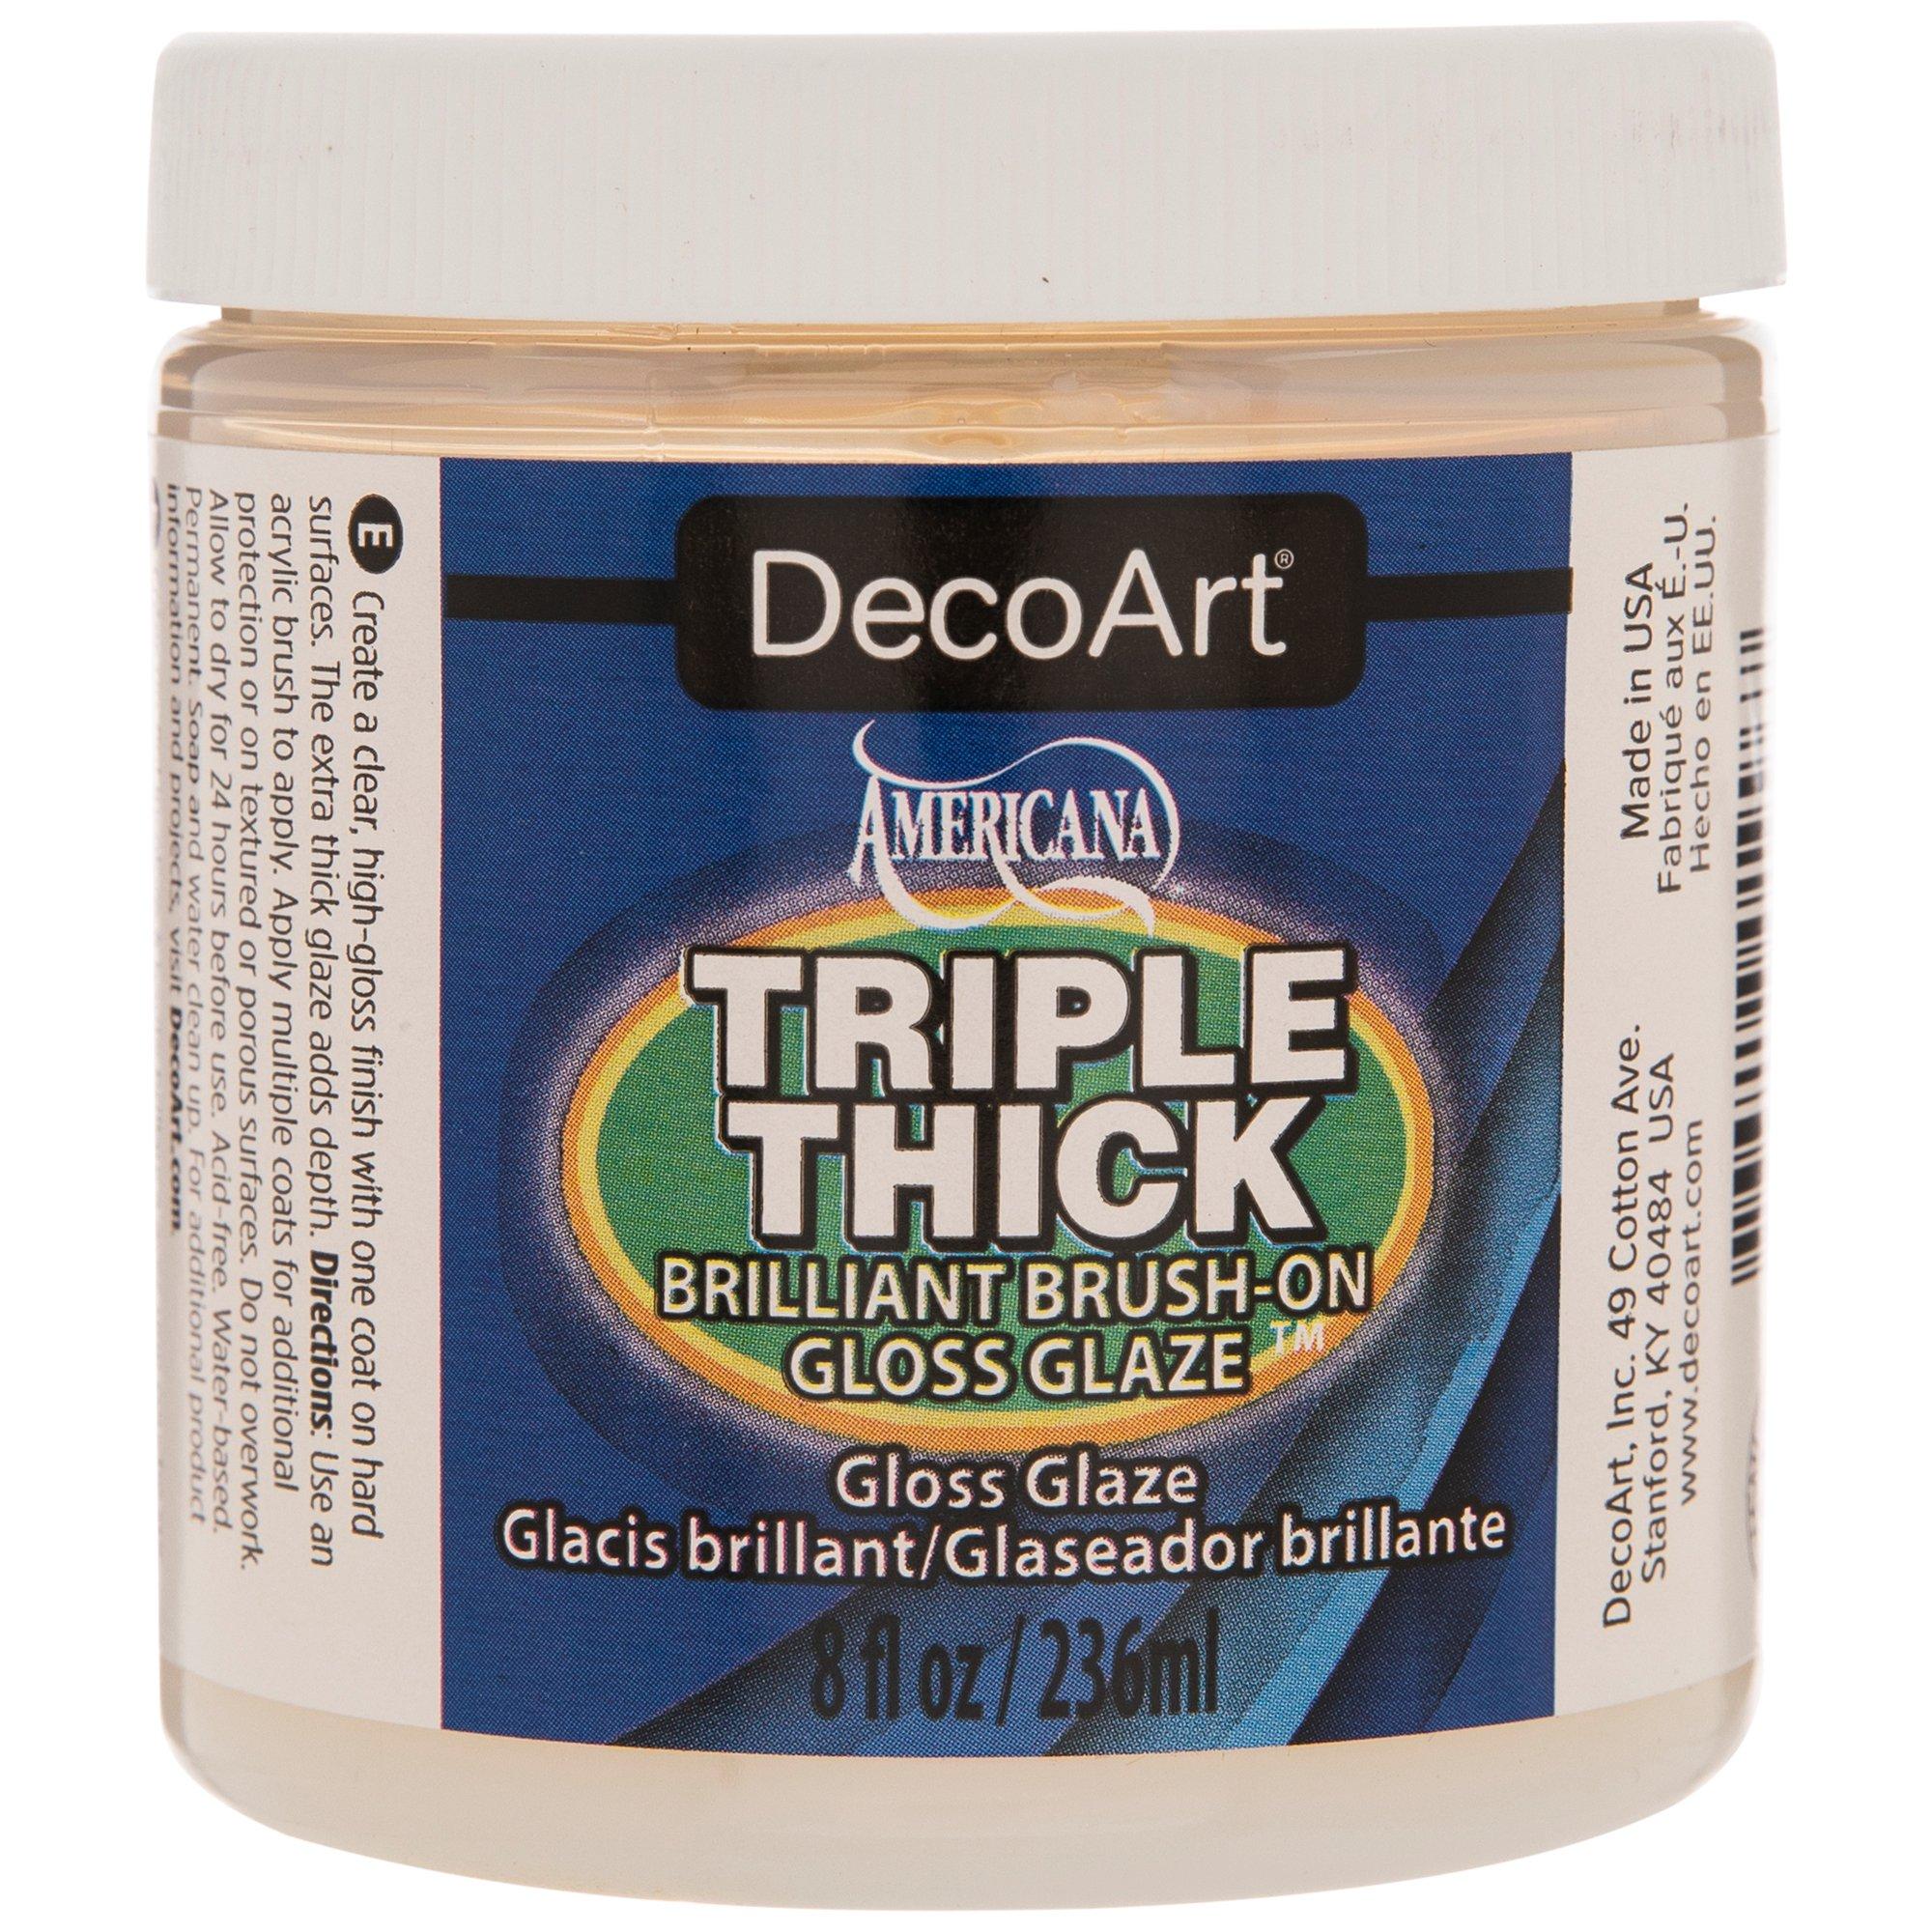 DecoArt Americana Triple Thick Brush-On Gloss Glaze, Hobby Lobby